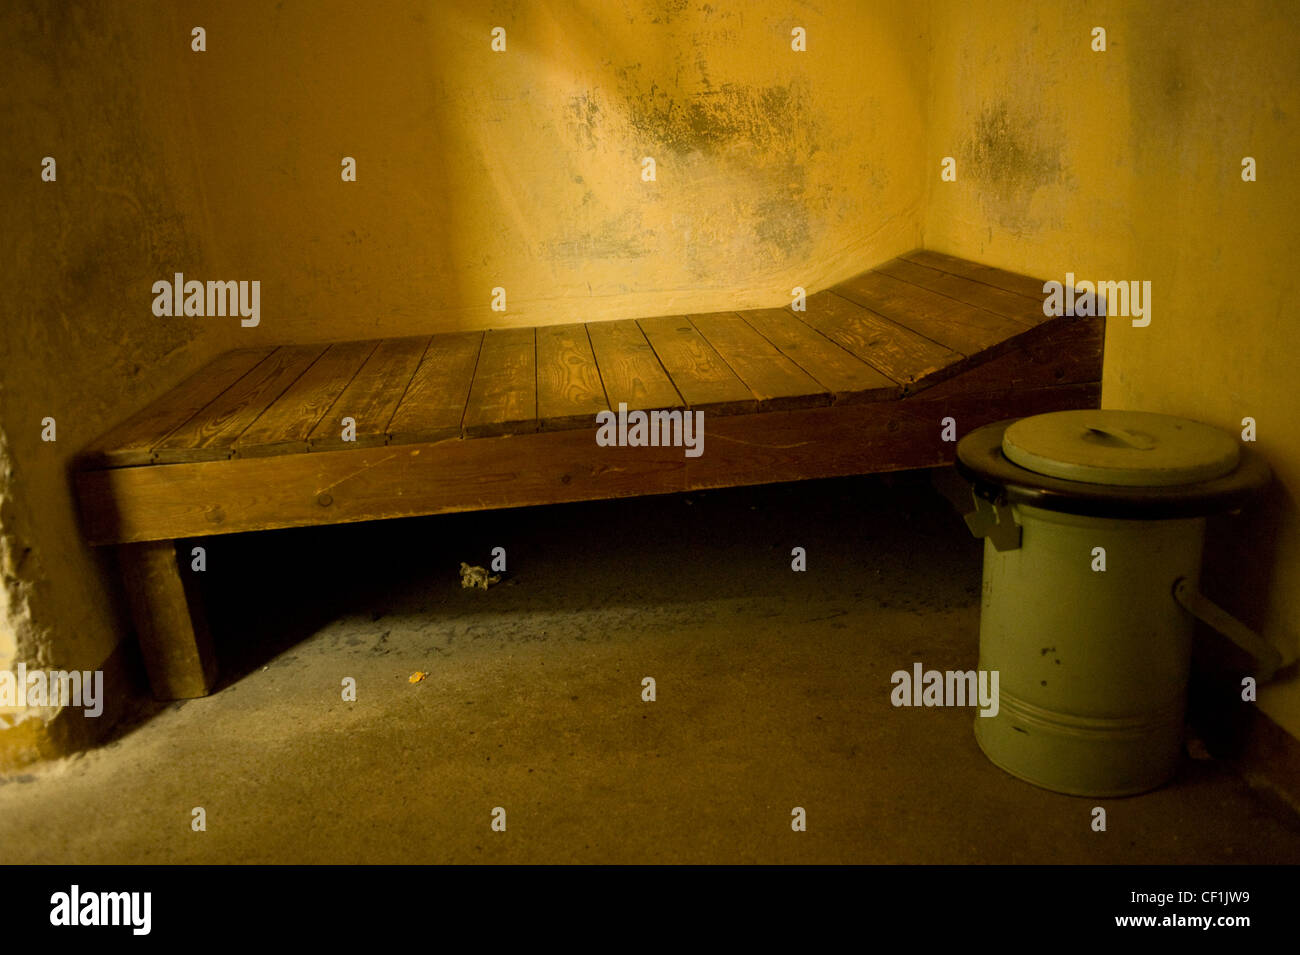 La Stasi-Prison. Spécial de l'ex-Union soviétique et du camp de détention provisoire du ministère de la sécurité d'Etat RDA. Banque D'Images